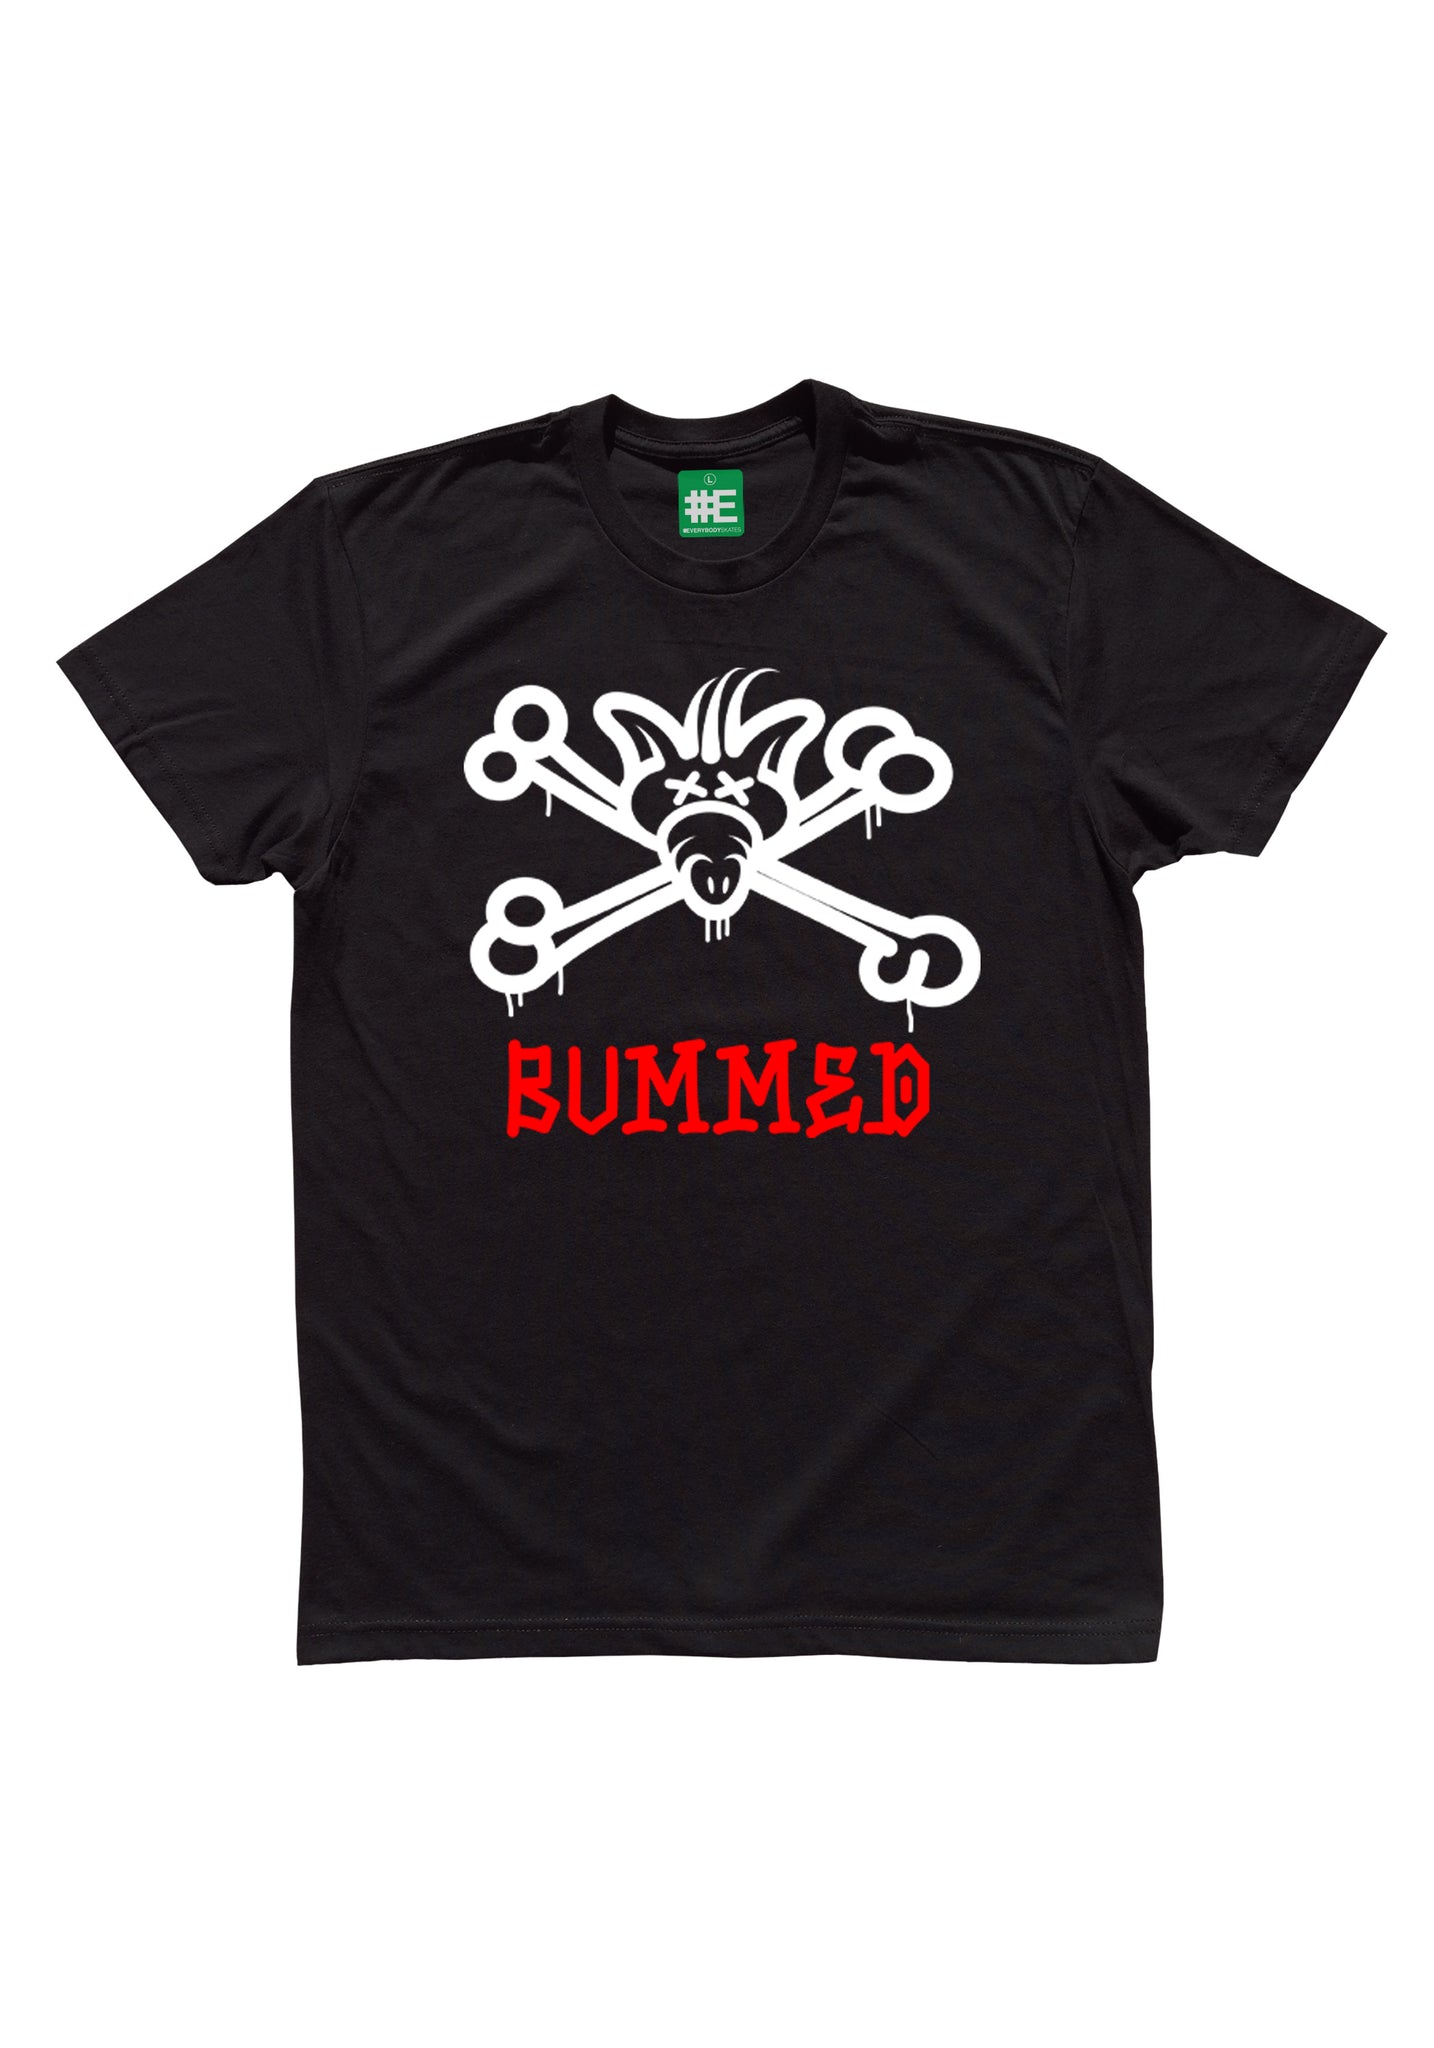 Bummed Graphic T-shirt